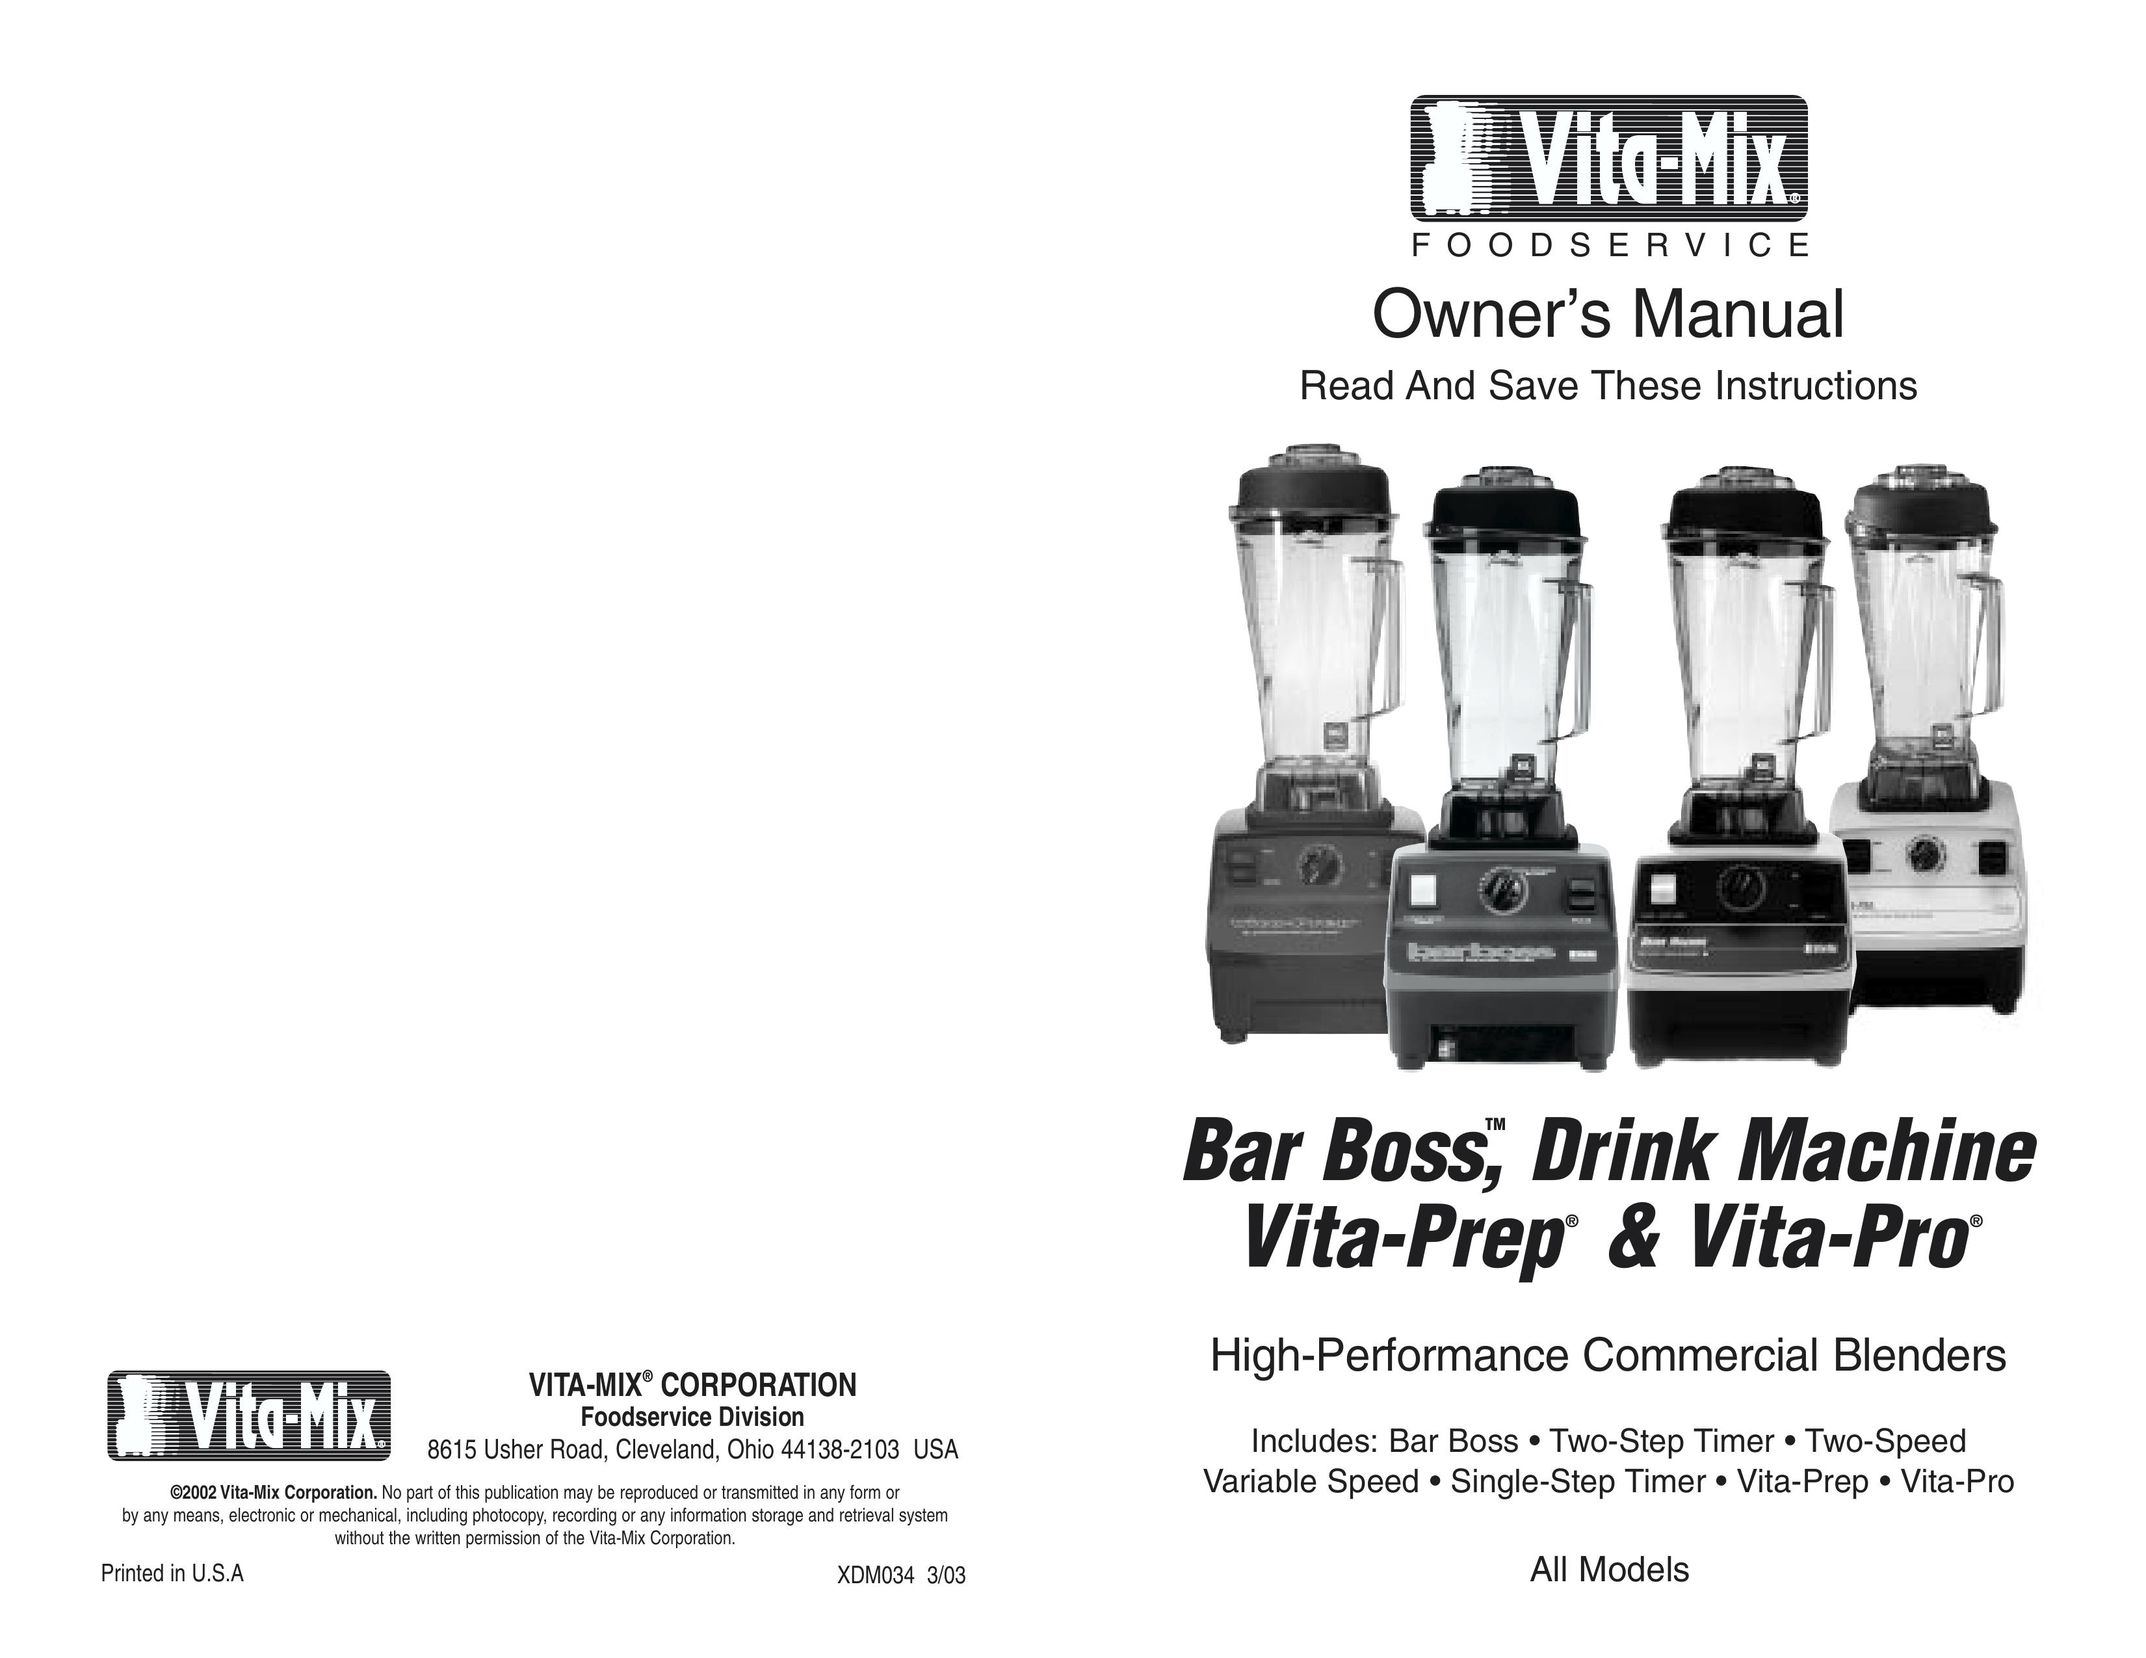 Vita-Mix High-Performance Commercial Blenders Blender User Manual